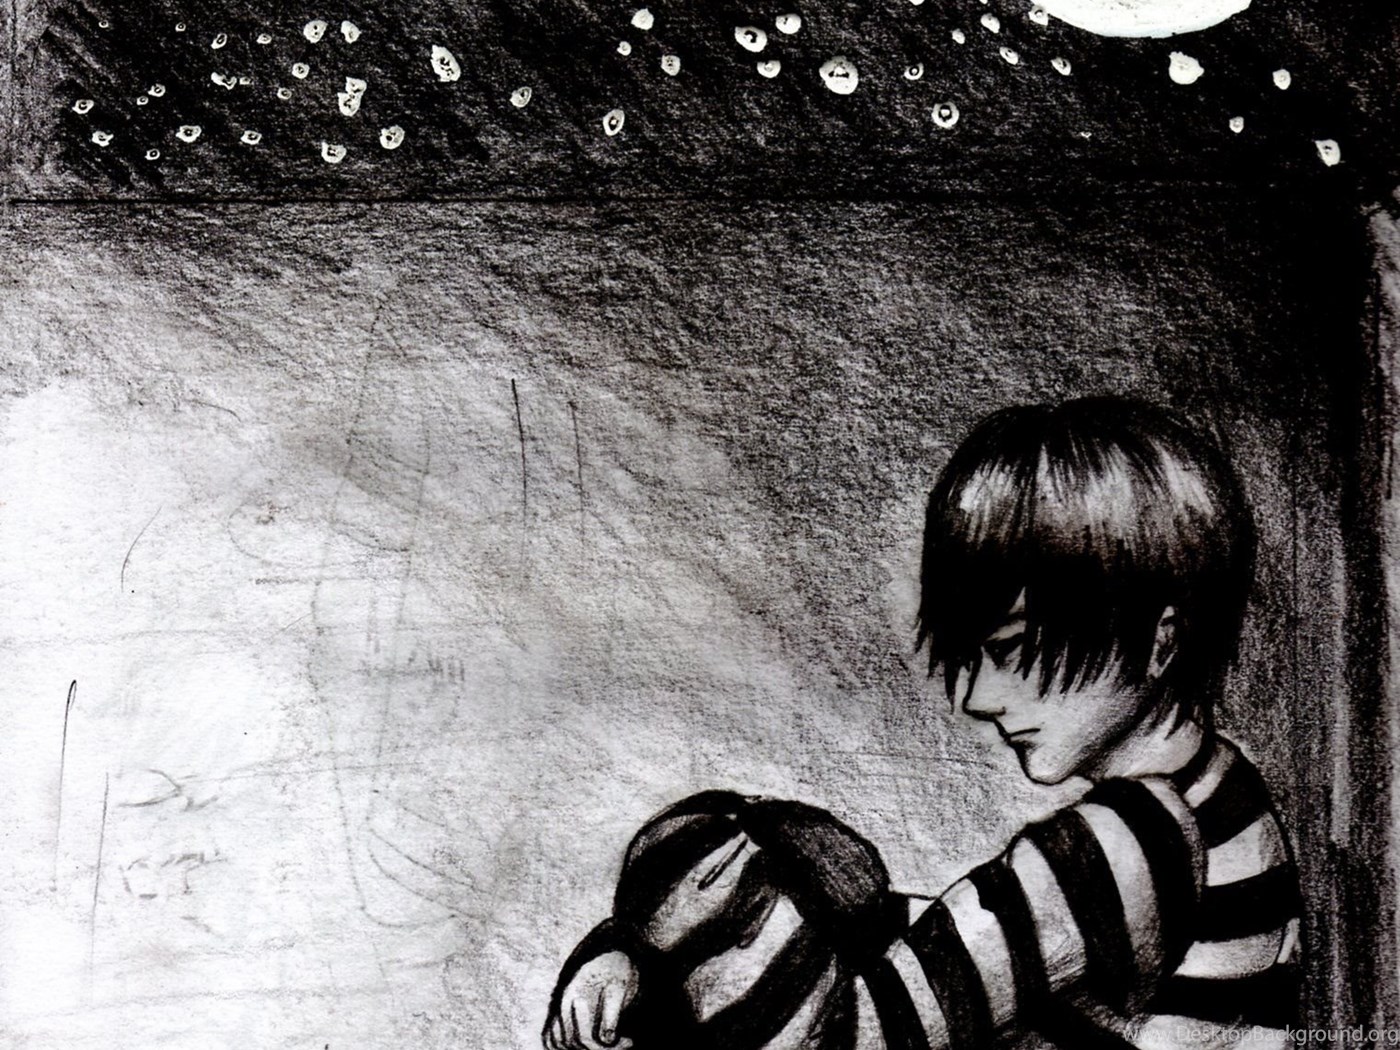 Sad Anime Boy Crying Wallpapers